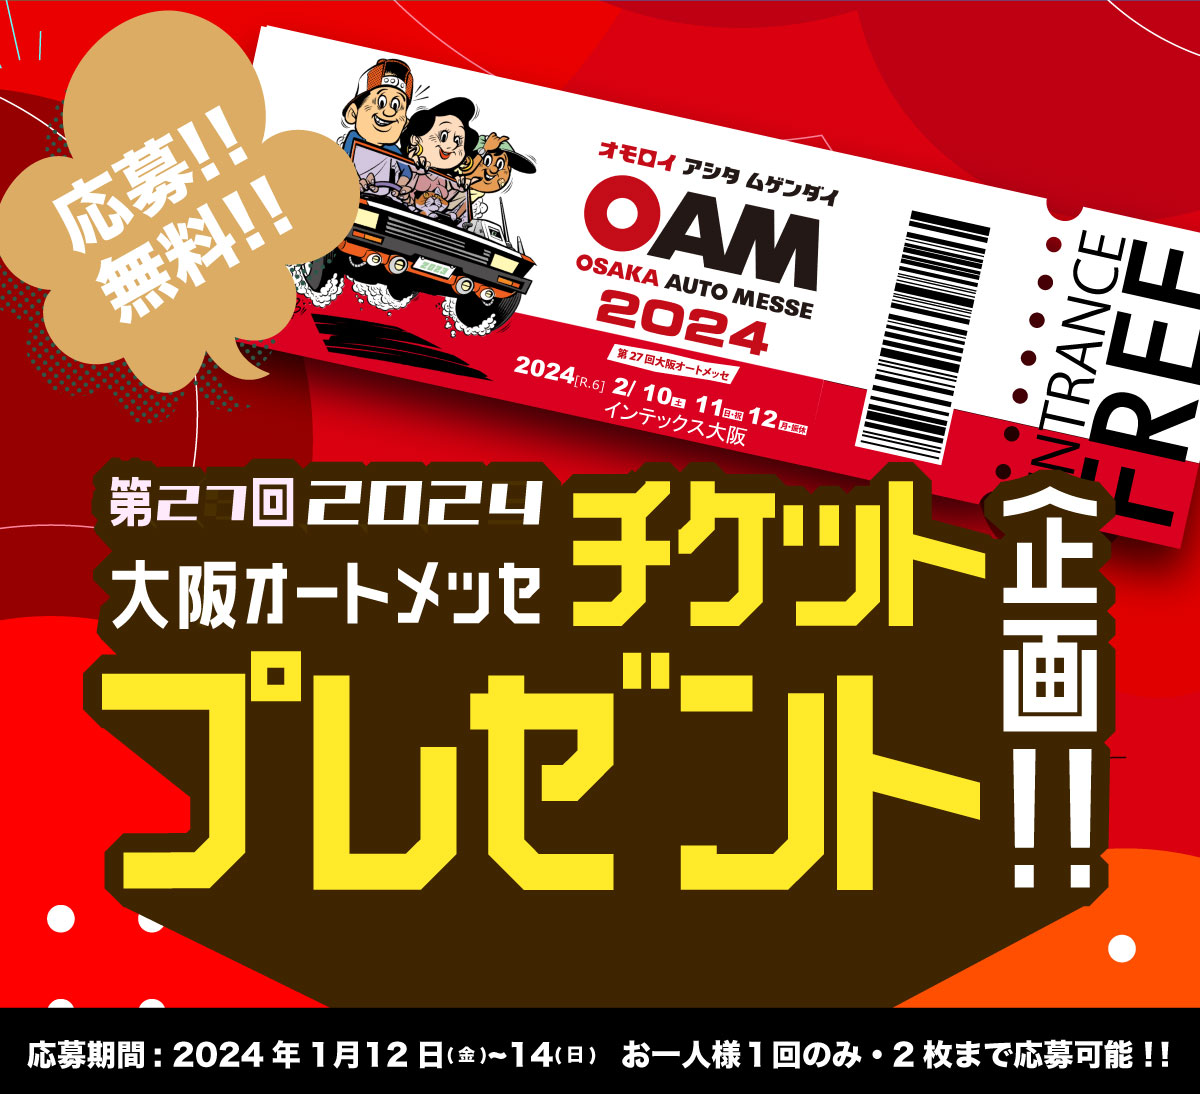 バナー:【数量限定】第27回 大阪オートメッセ 2024 チケット抽選プレゼント企画！！